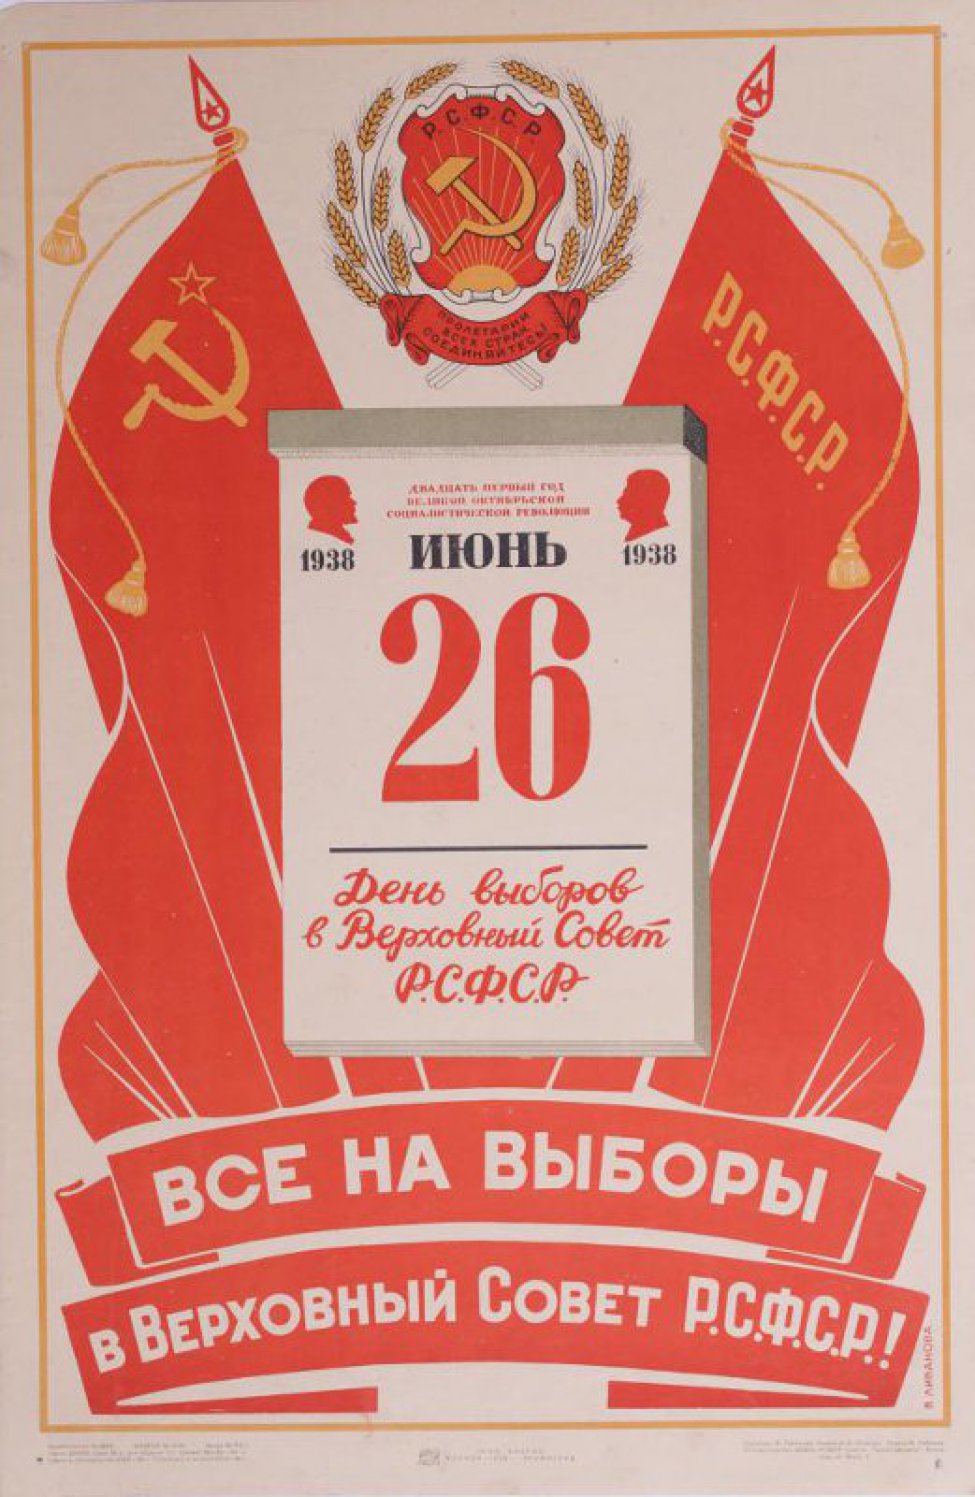 Изображен на фоне знамен календарный лист: 26 июня 1938 г. День выборов в Верховный Совет РСФСР. Вверху  герб.